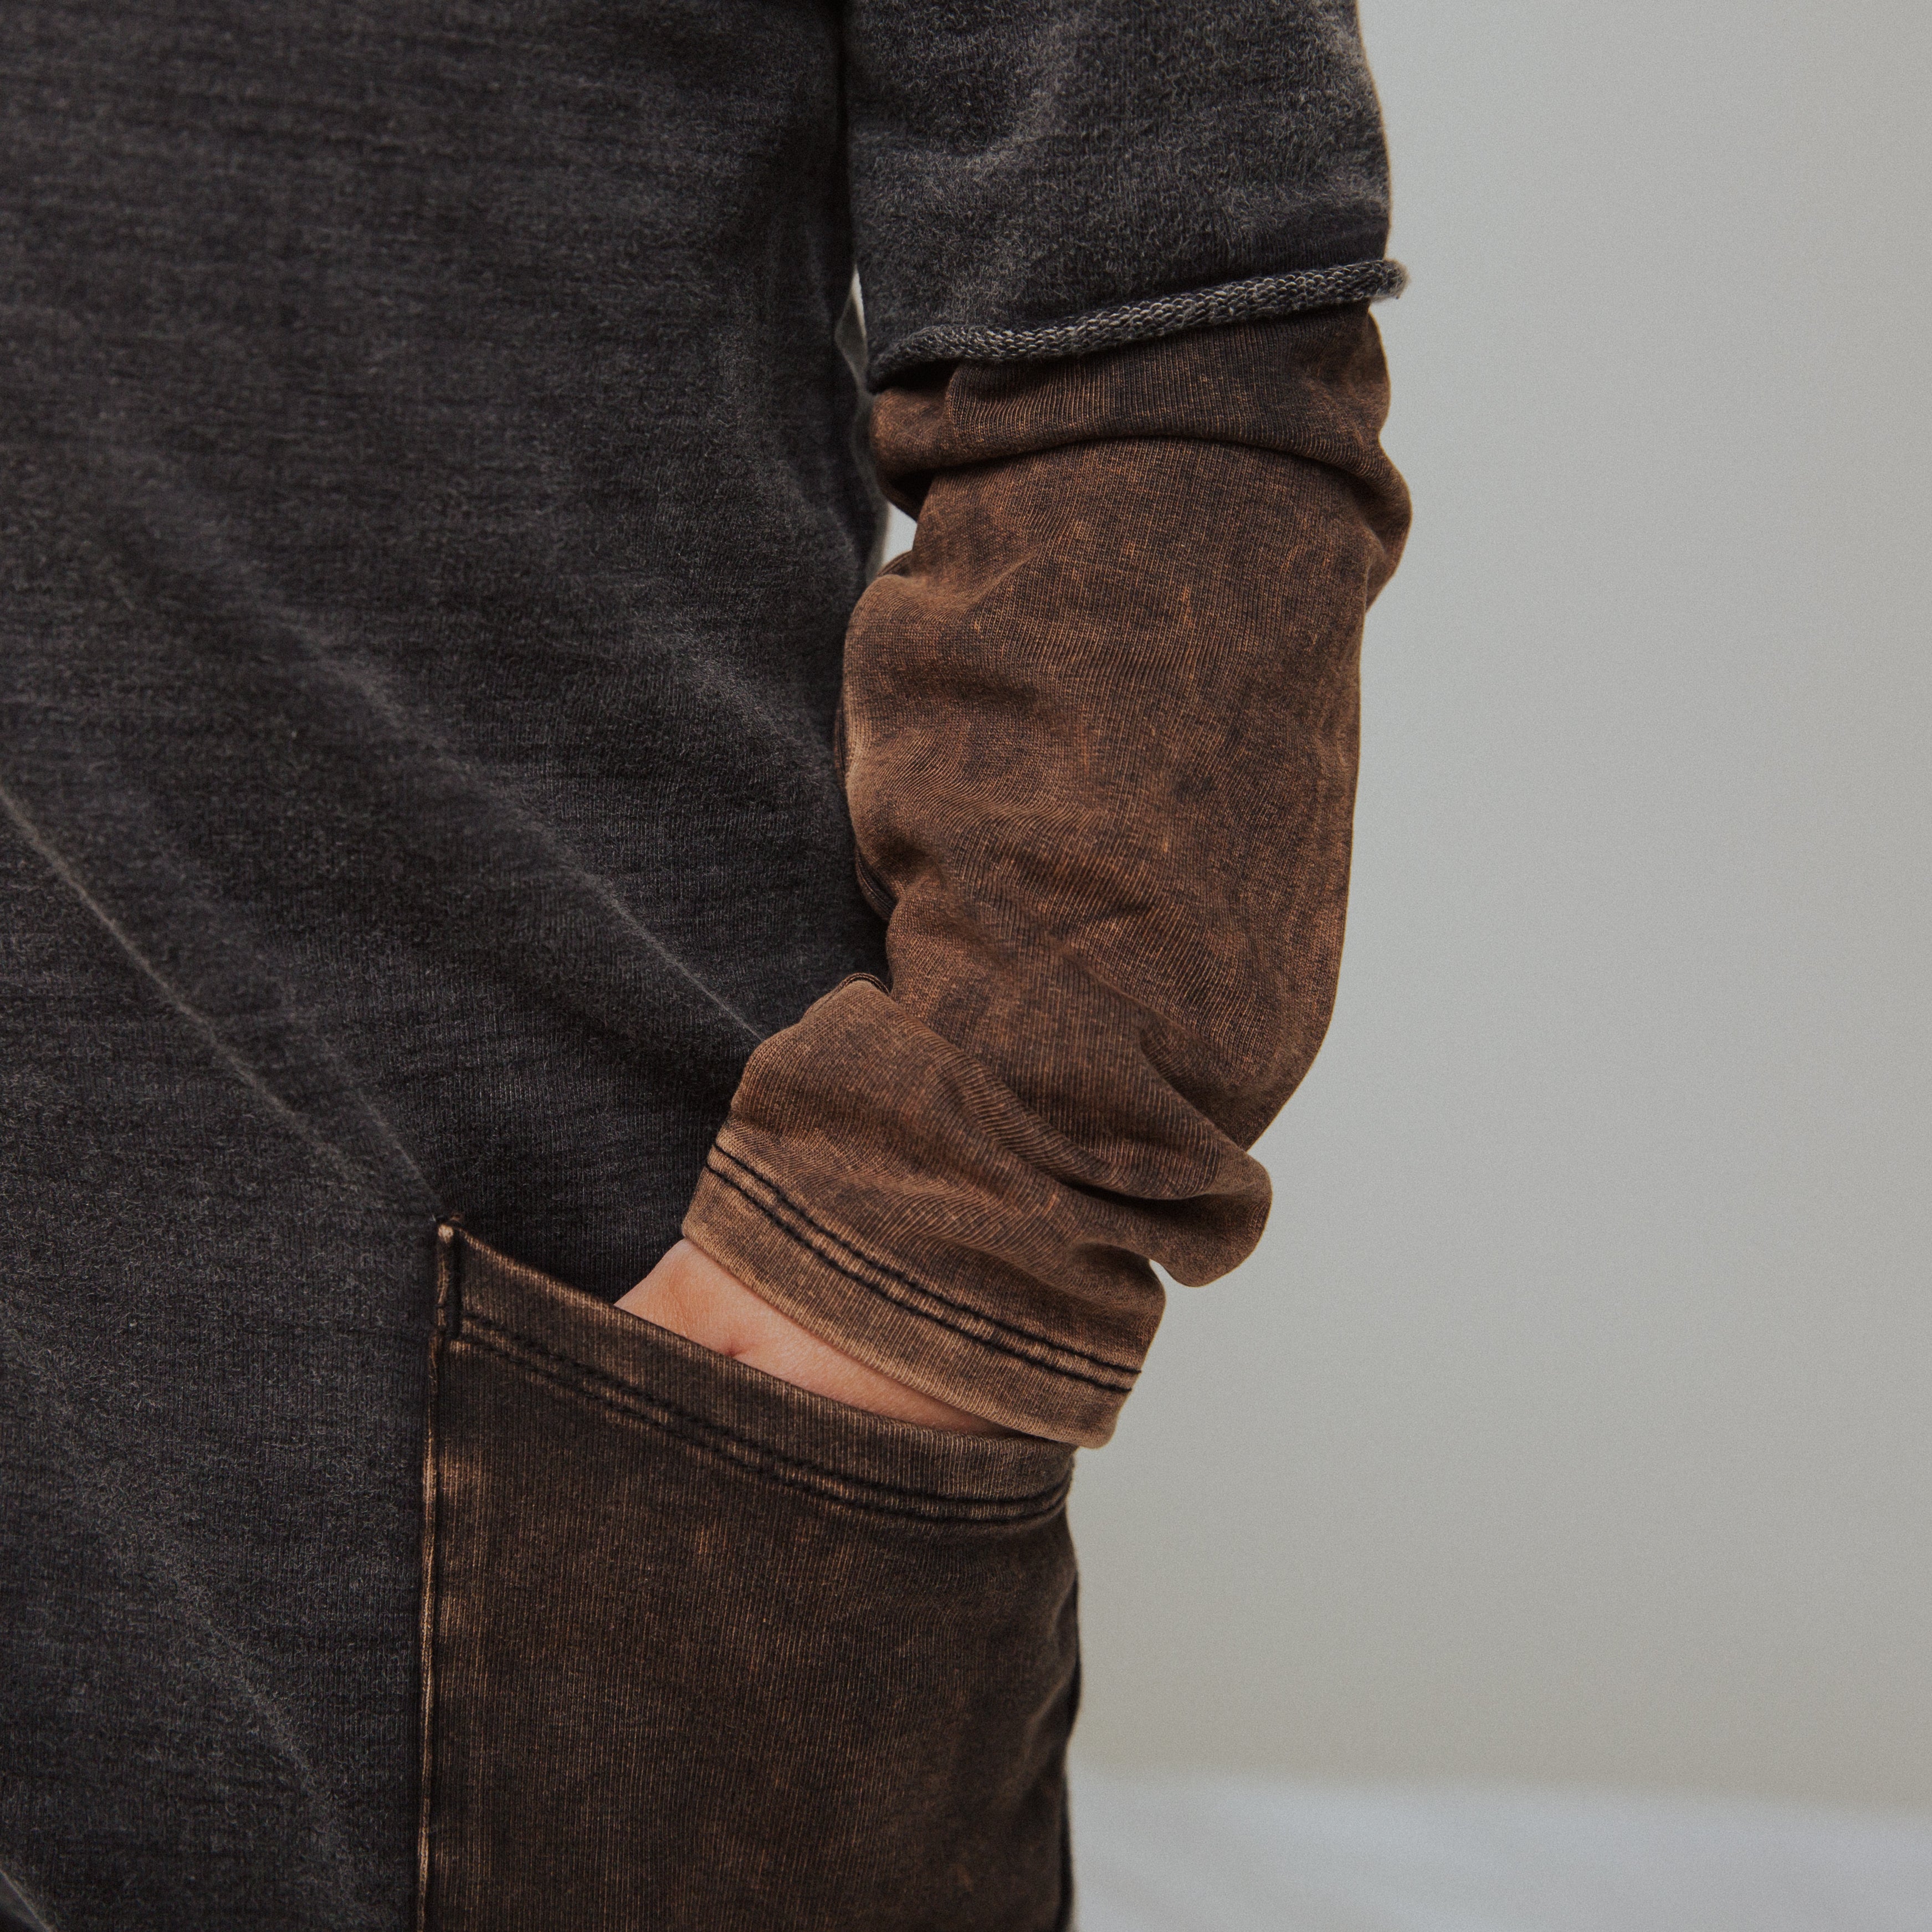 Layered Sleeve Big Hip Pocket Rag Romper - 'Washed Black Denim'